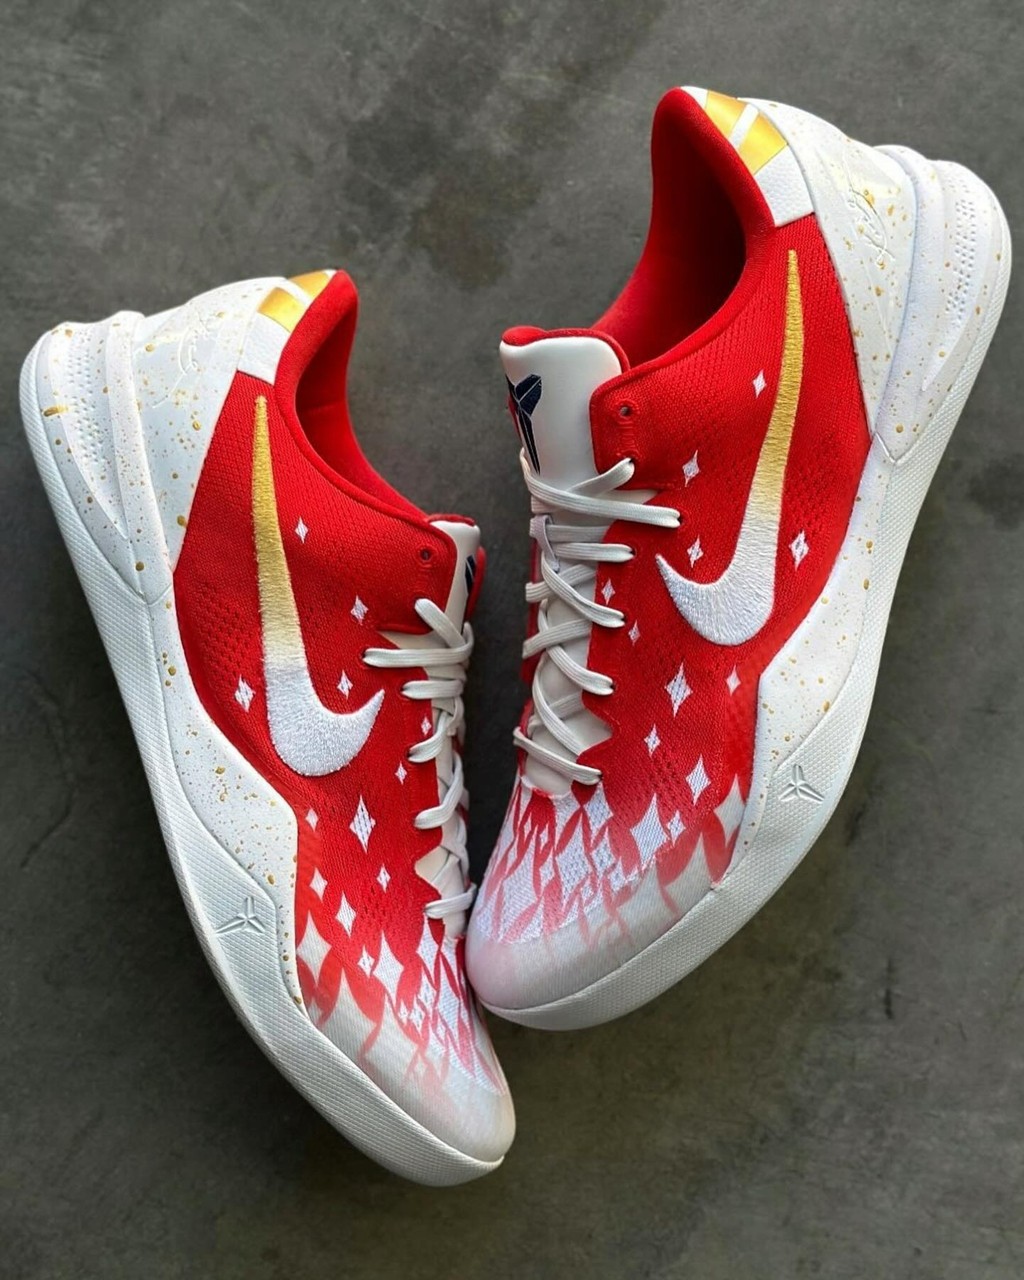 Nike,Kobe 8,定制  全明星赛主题！「拉斯维加斯」Kobe 8 高清实物来了！